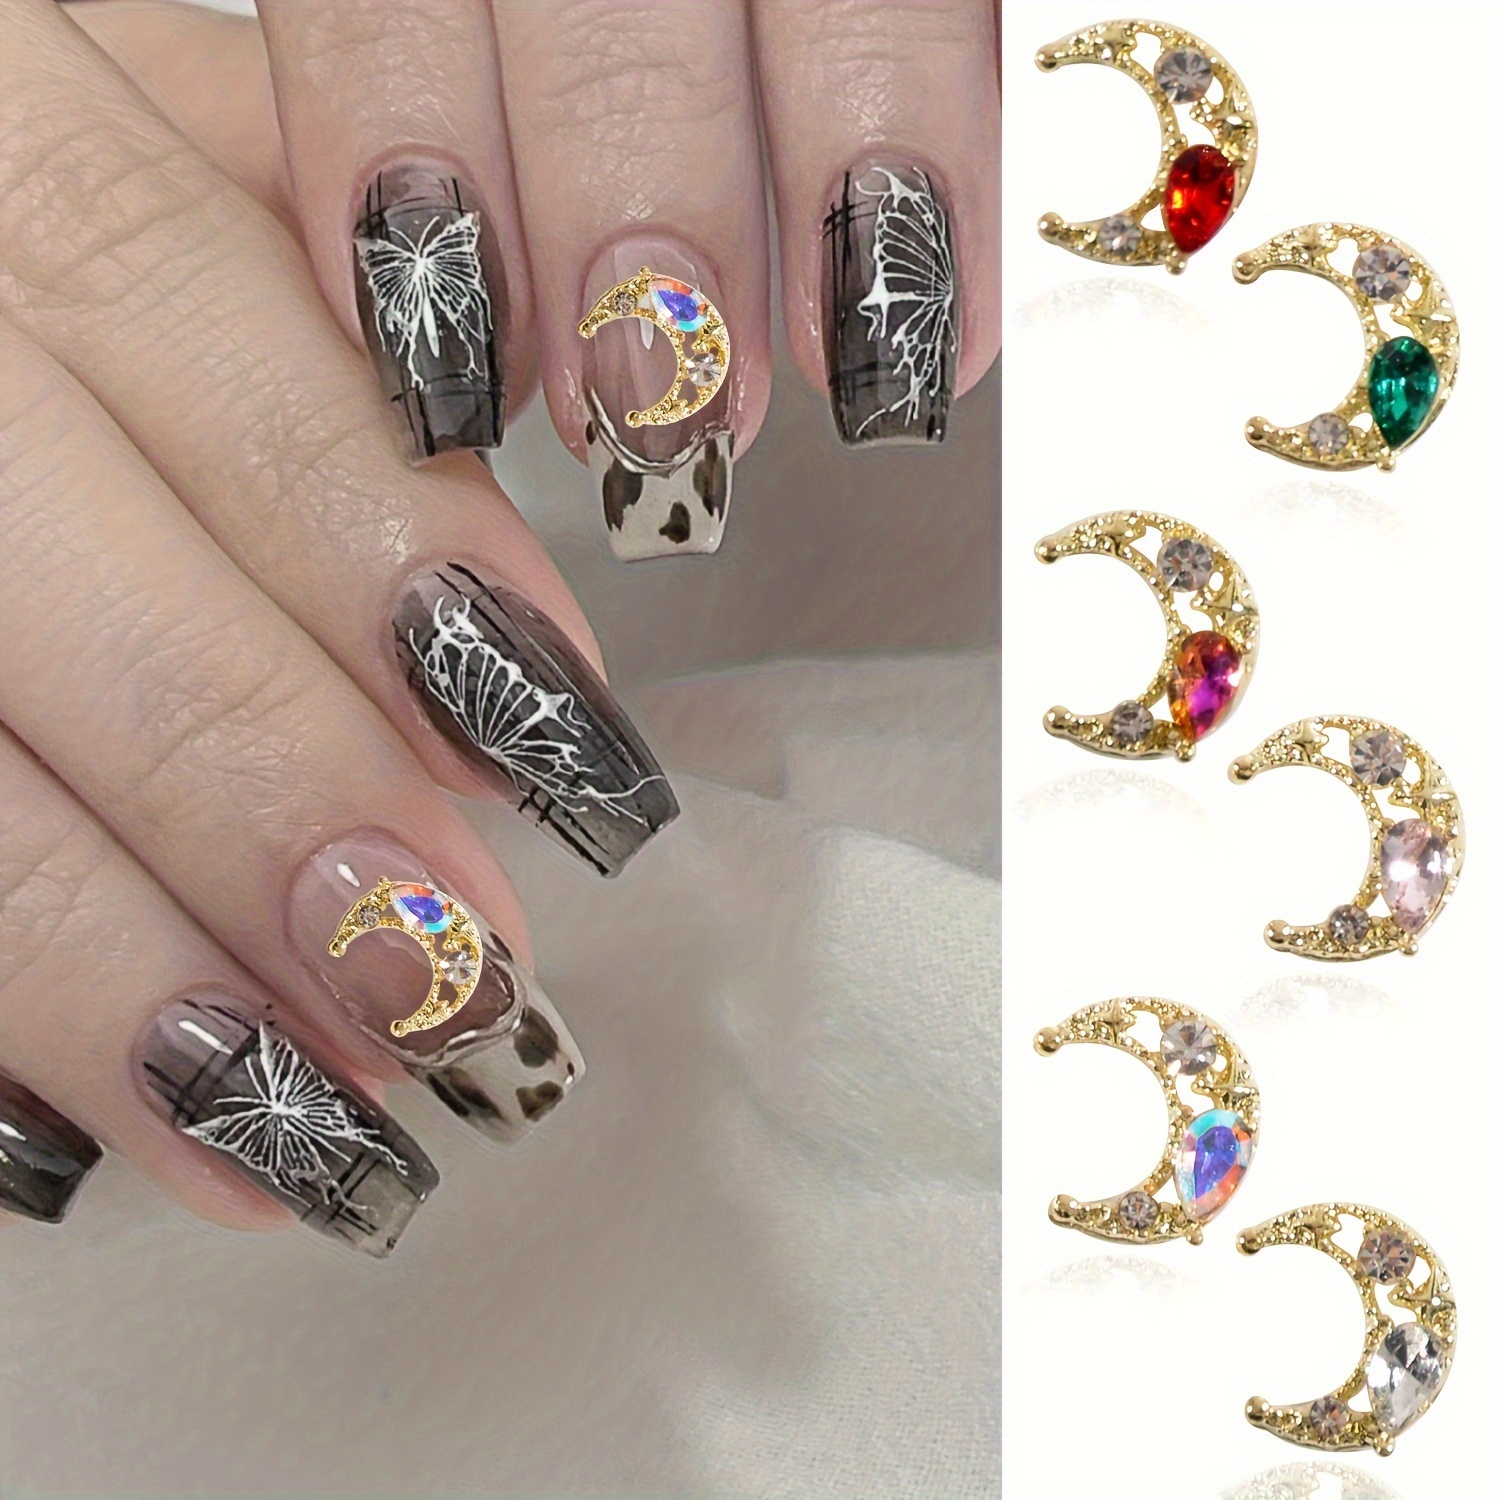 Mix Gold Nail Art Rivet Star Moon Pearl Rhinestones Gems 3D Decoration  Manicure